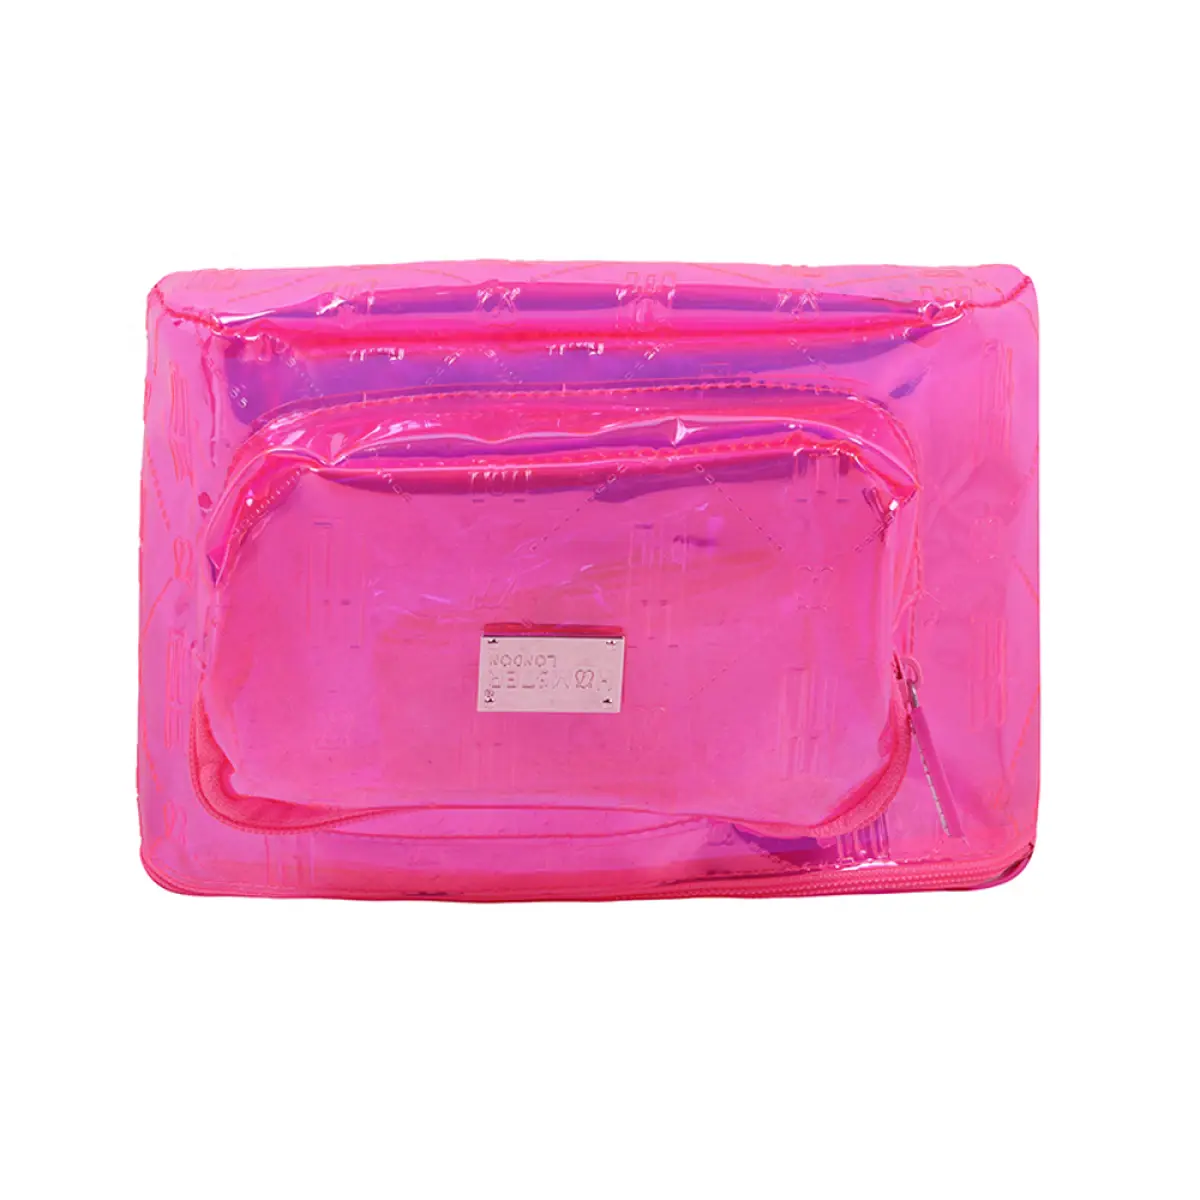 Hamster London Waist Bag Raver Pink Pink 9Y+